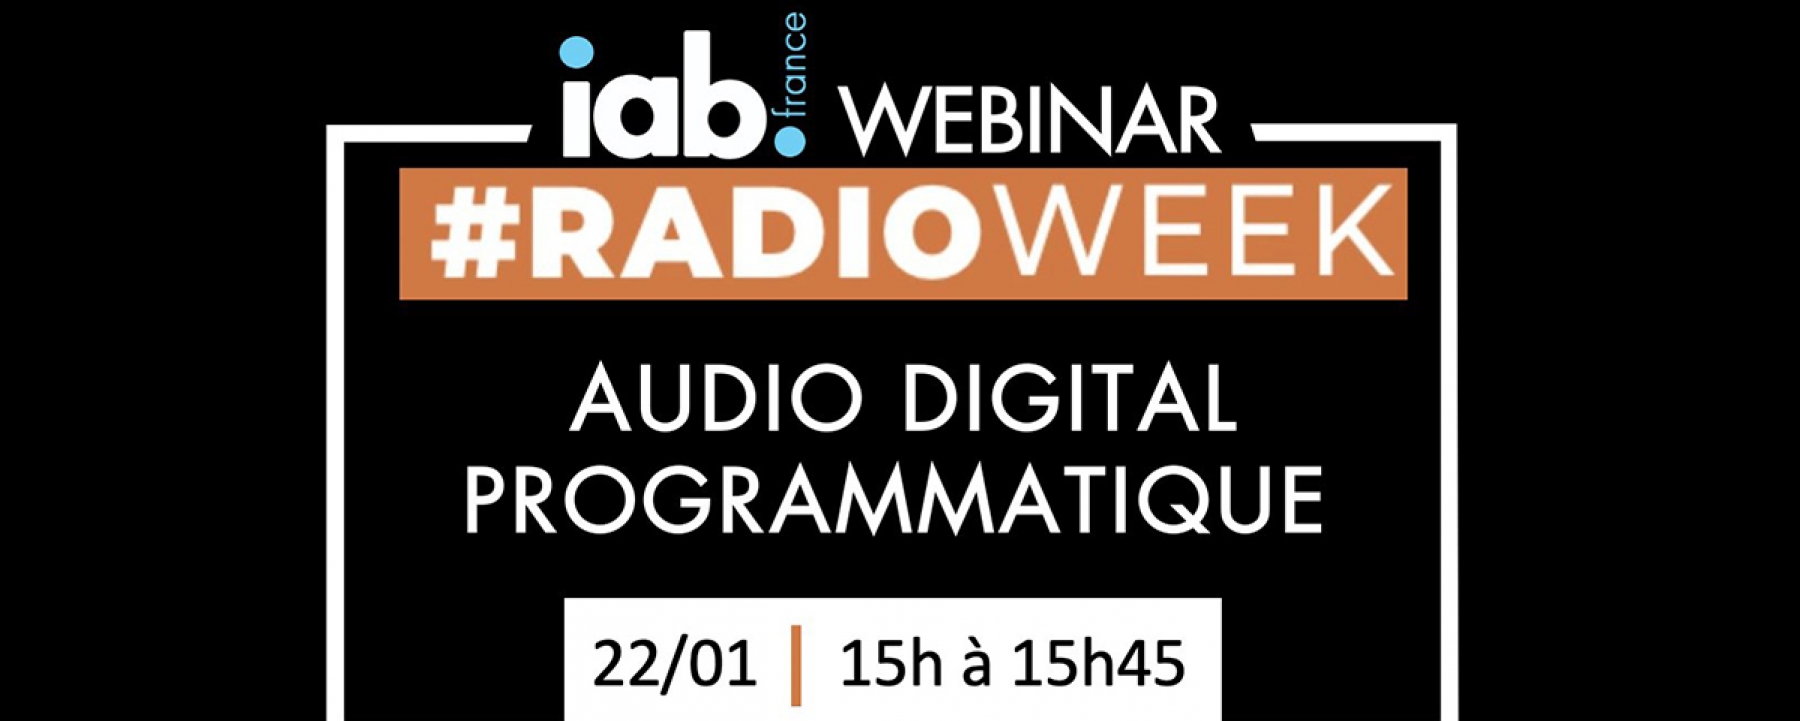 Audio Digital Programmatique, un webinaire organisé par IAB France le 22 janvier